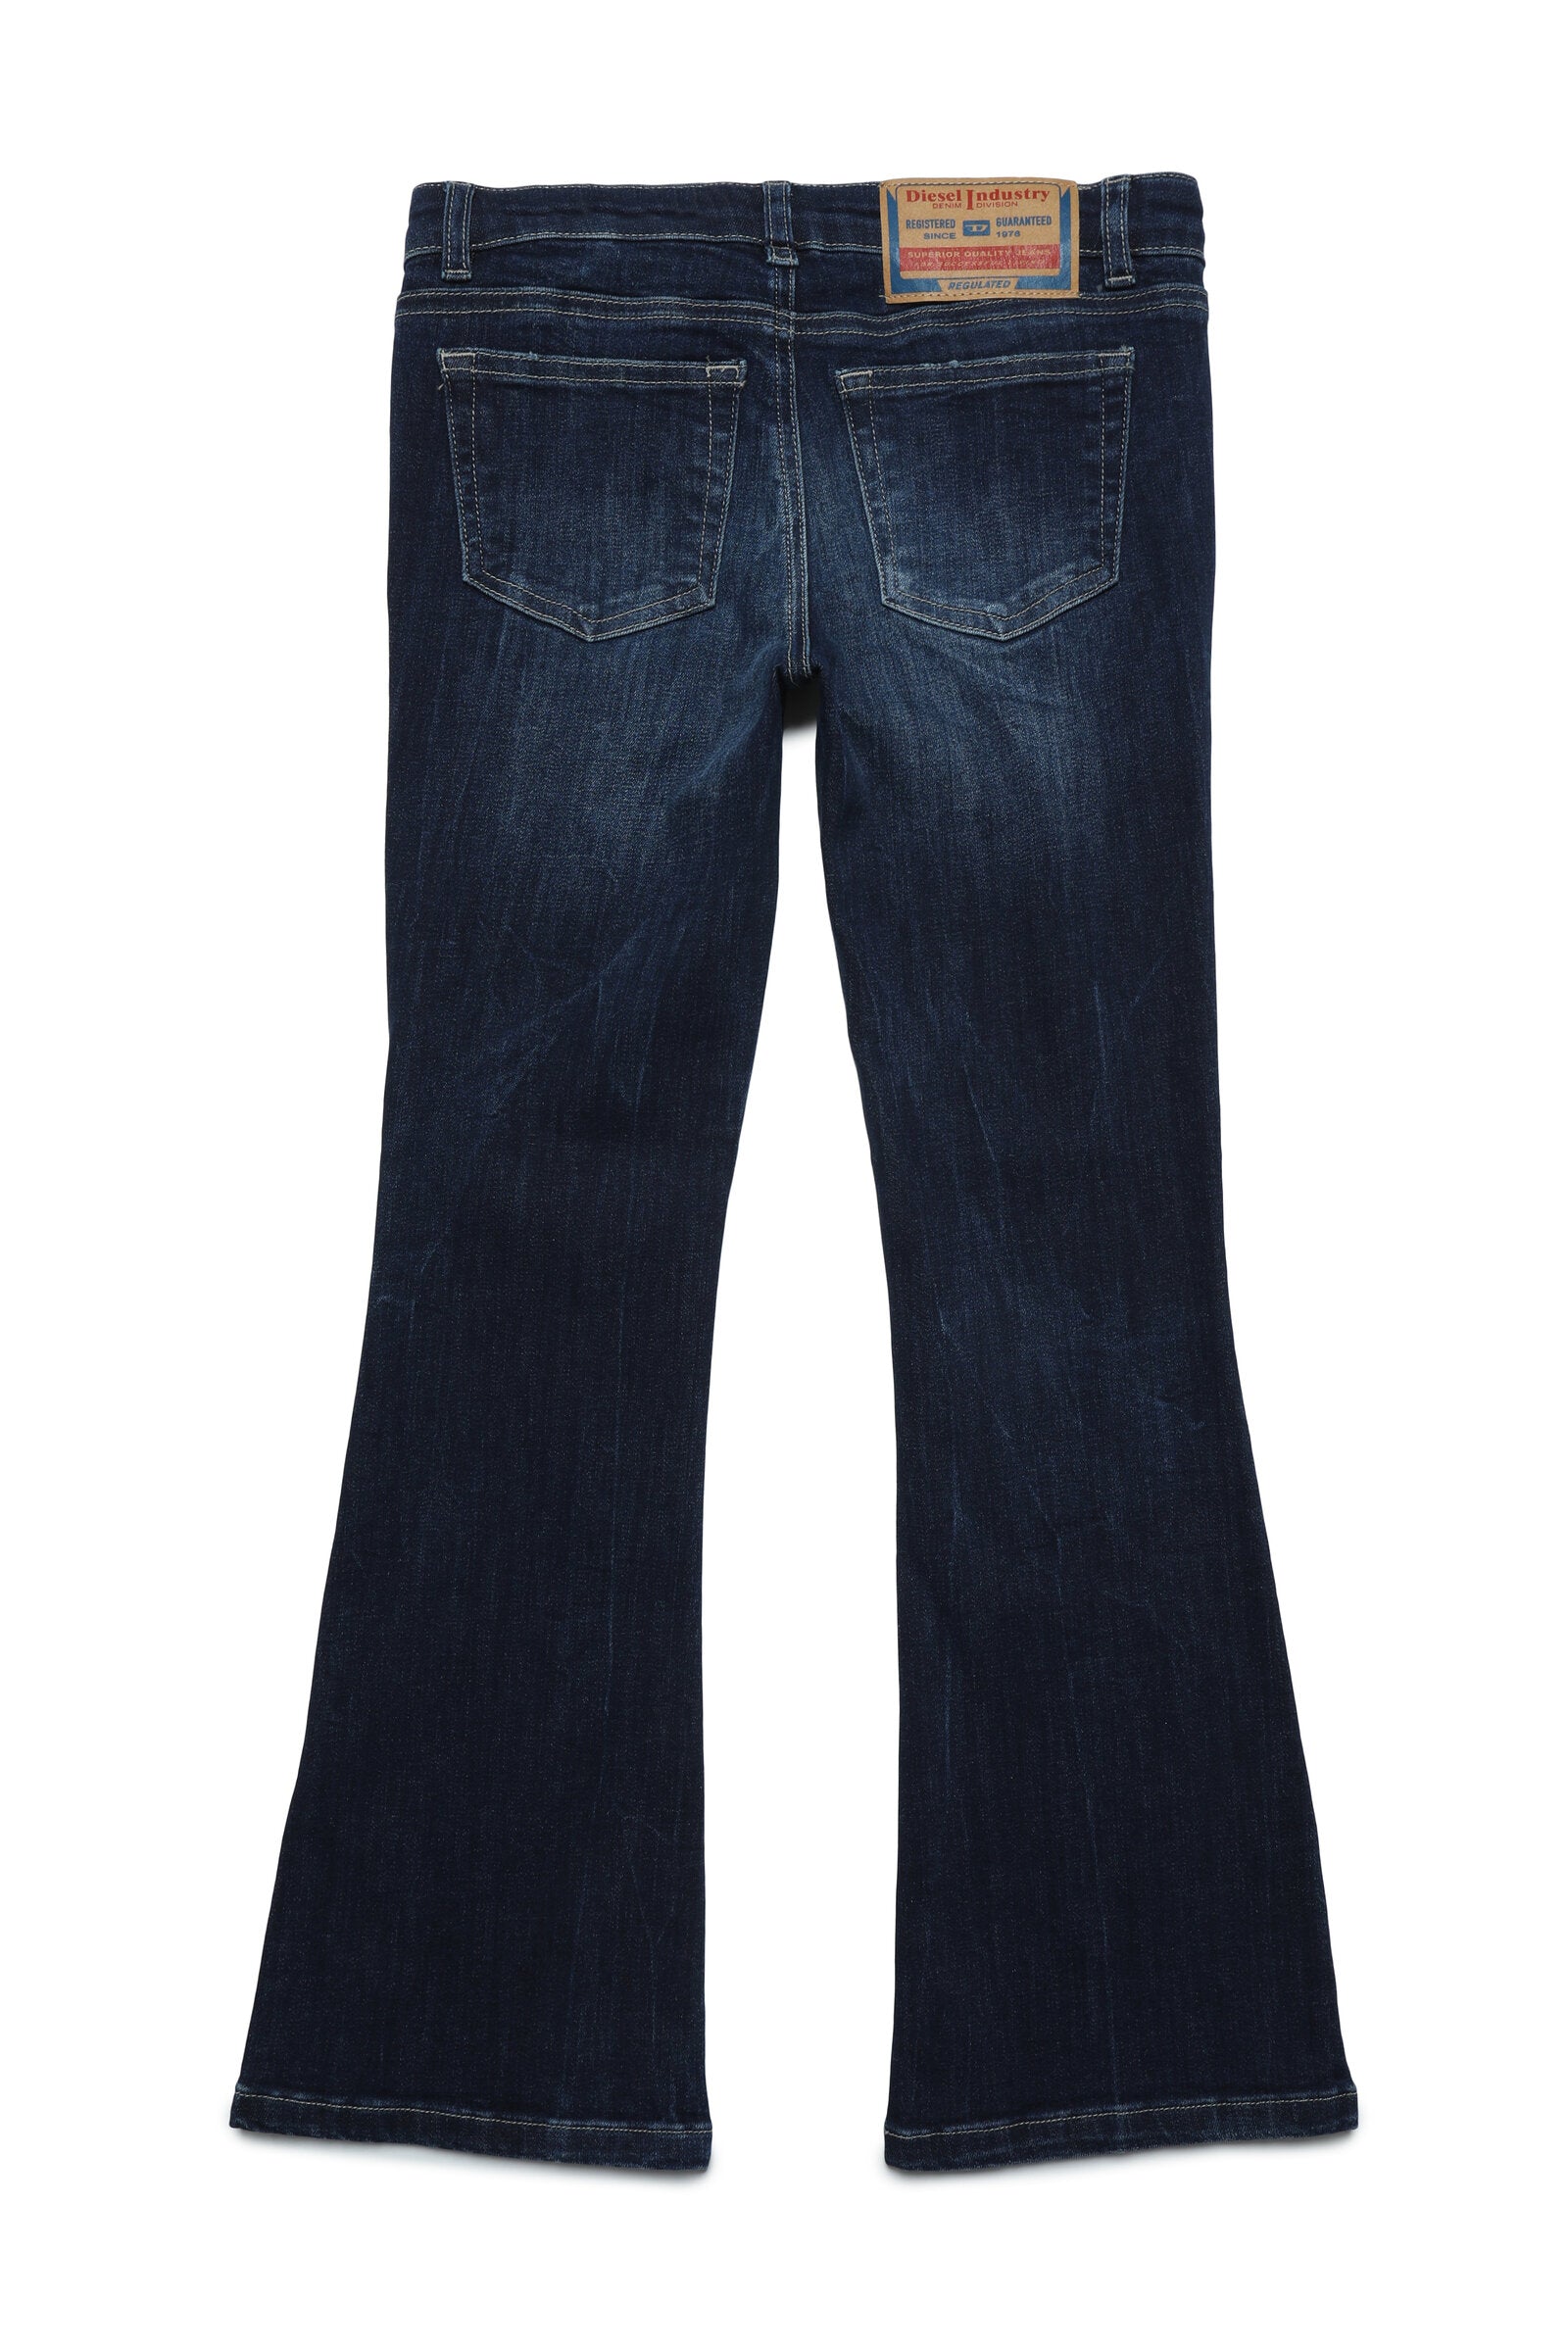 DIESEL girl Jeans 1969 D-Ebbey bootcut dark blue